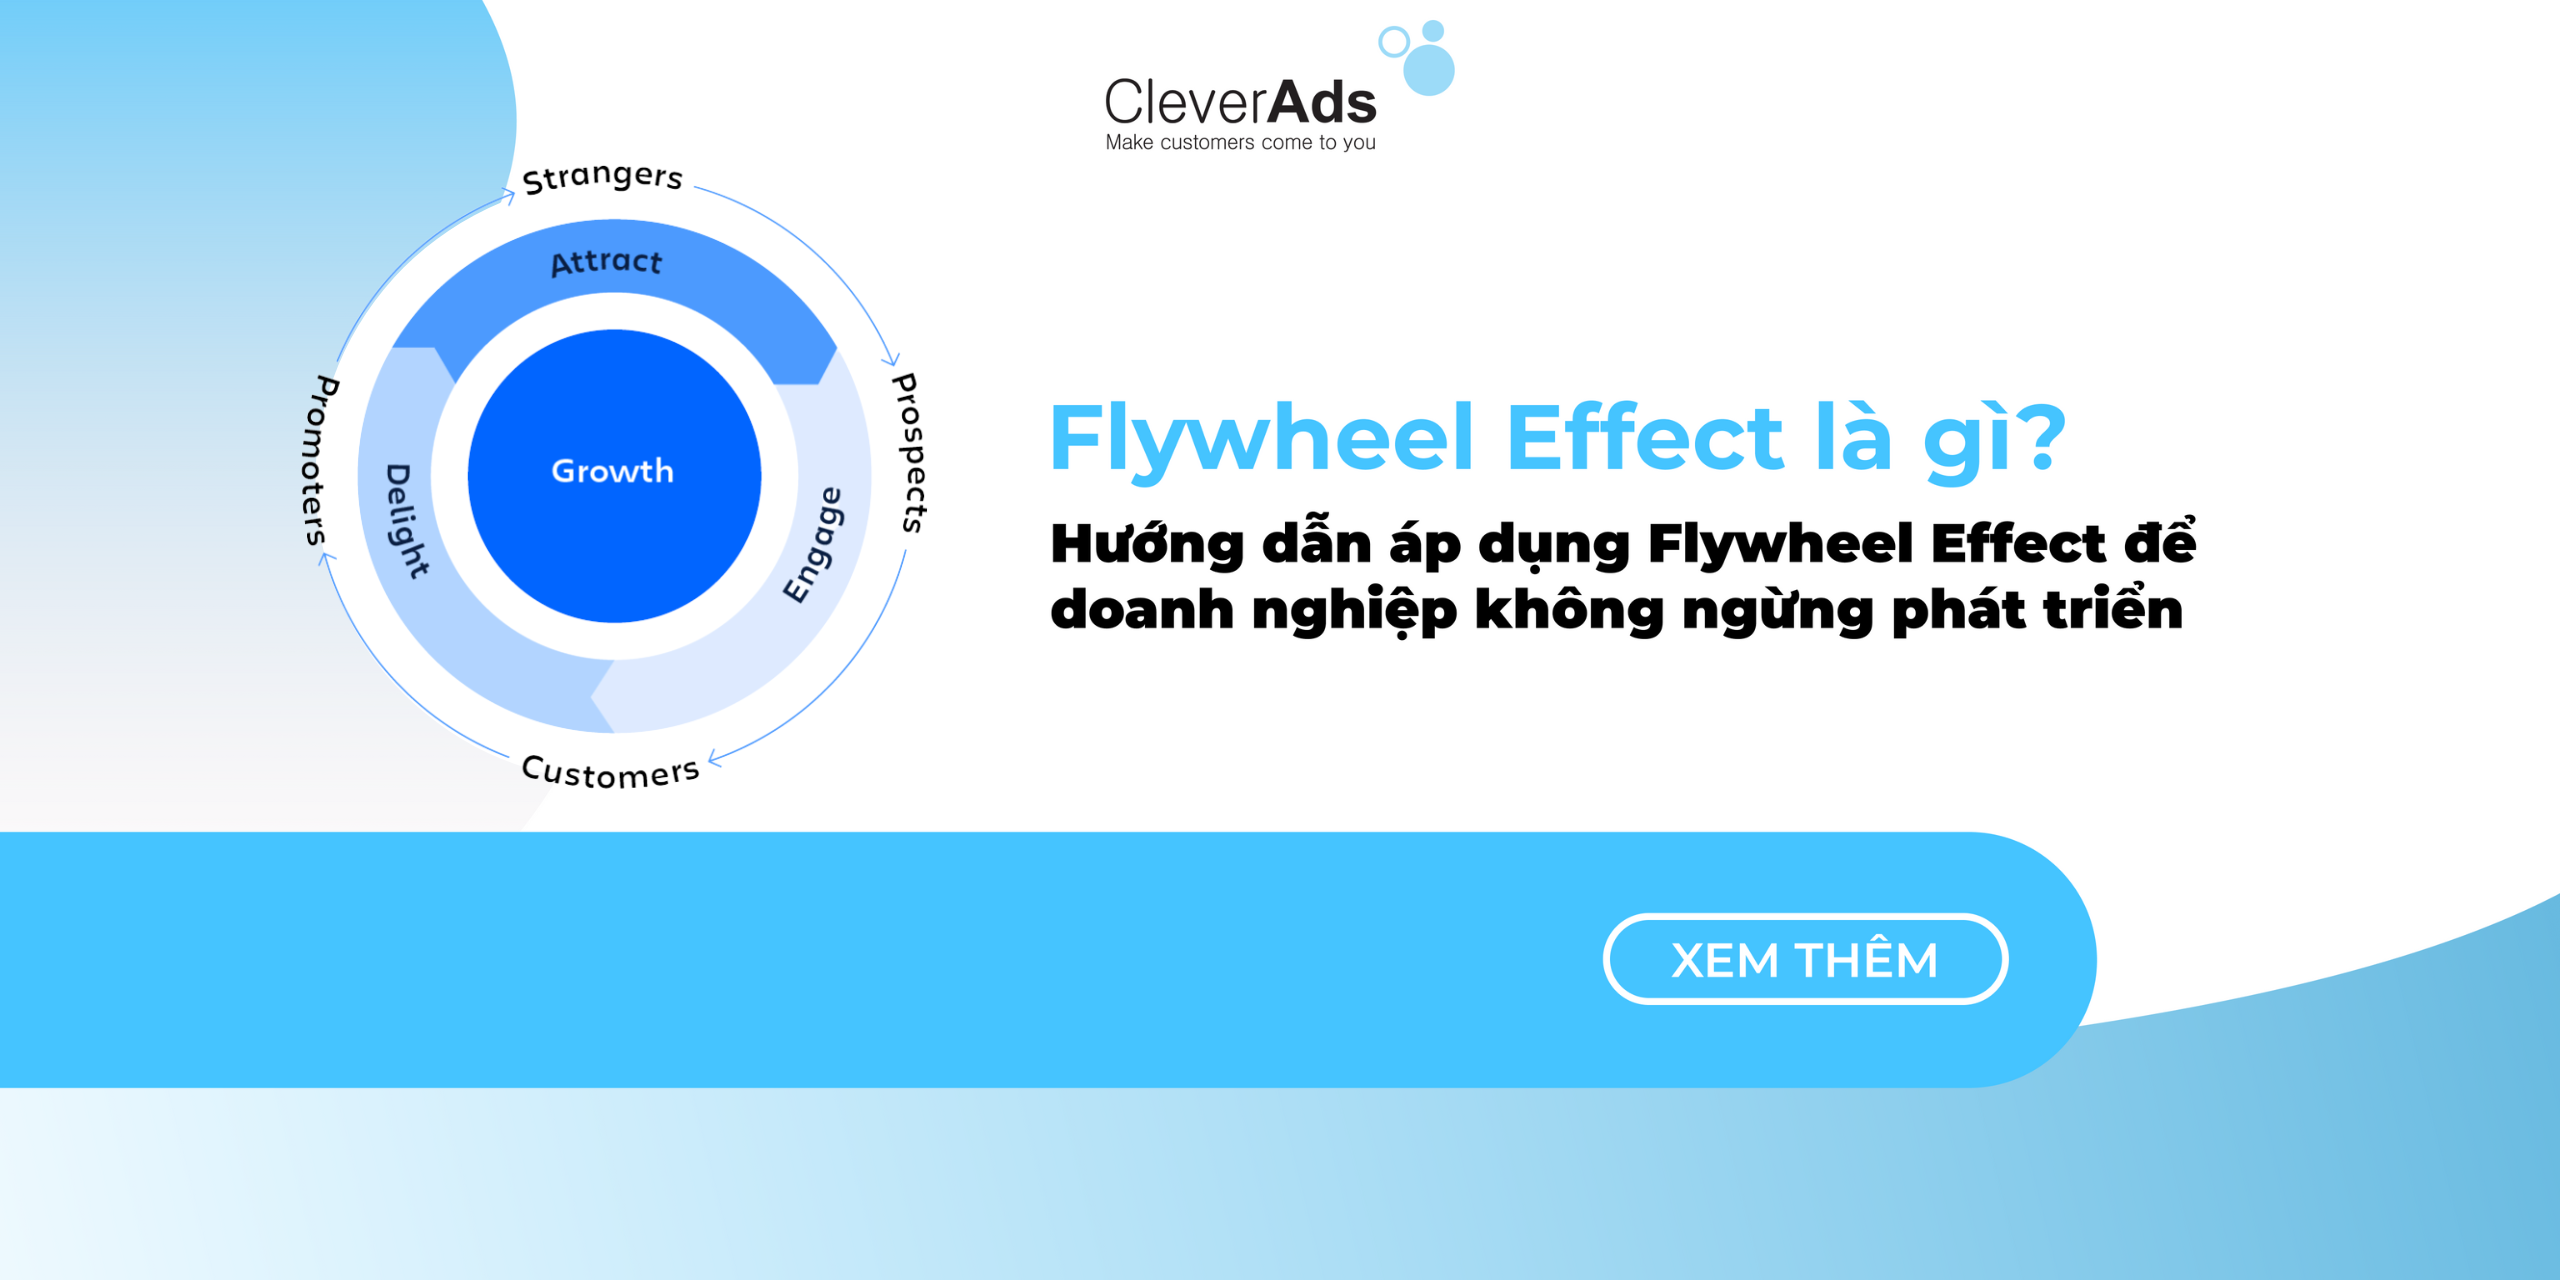 Flywheel Effect là gì? Hướng dẫn áp dụng Flywheel Effect để doanh nghiệp không ngừng phát triển